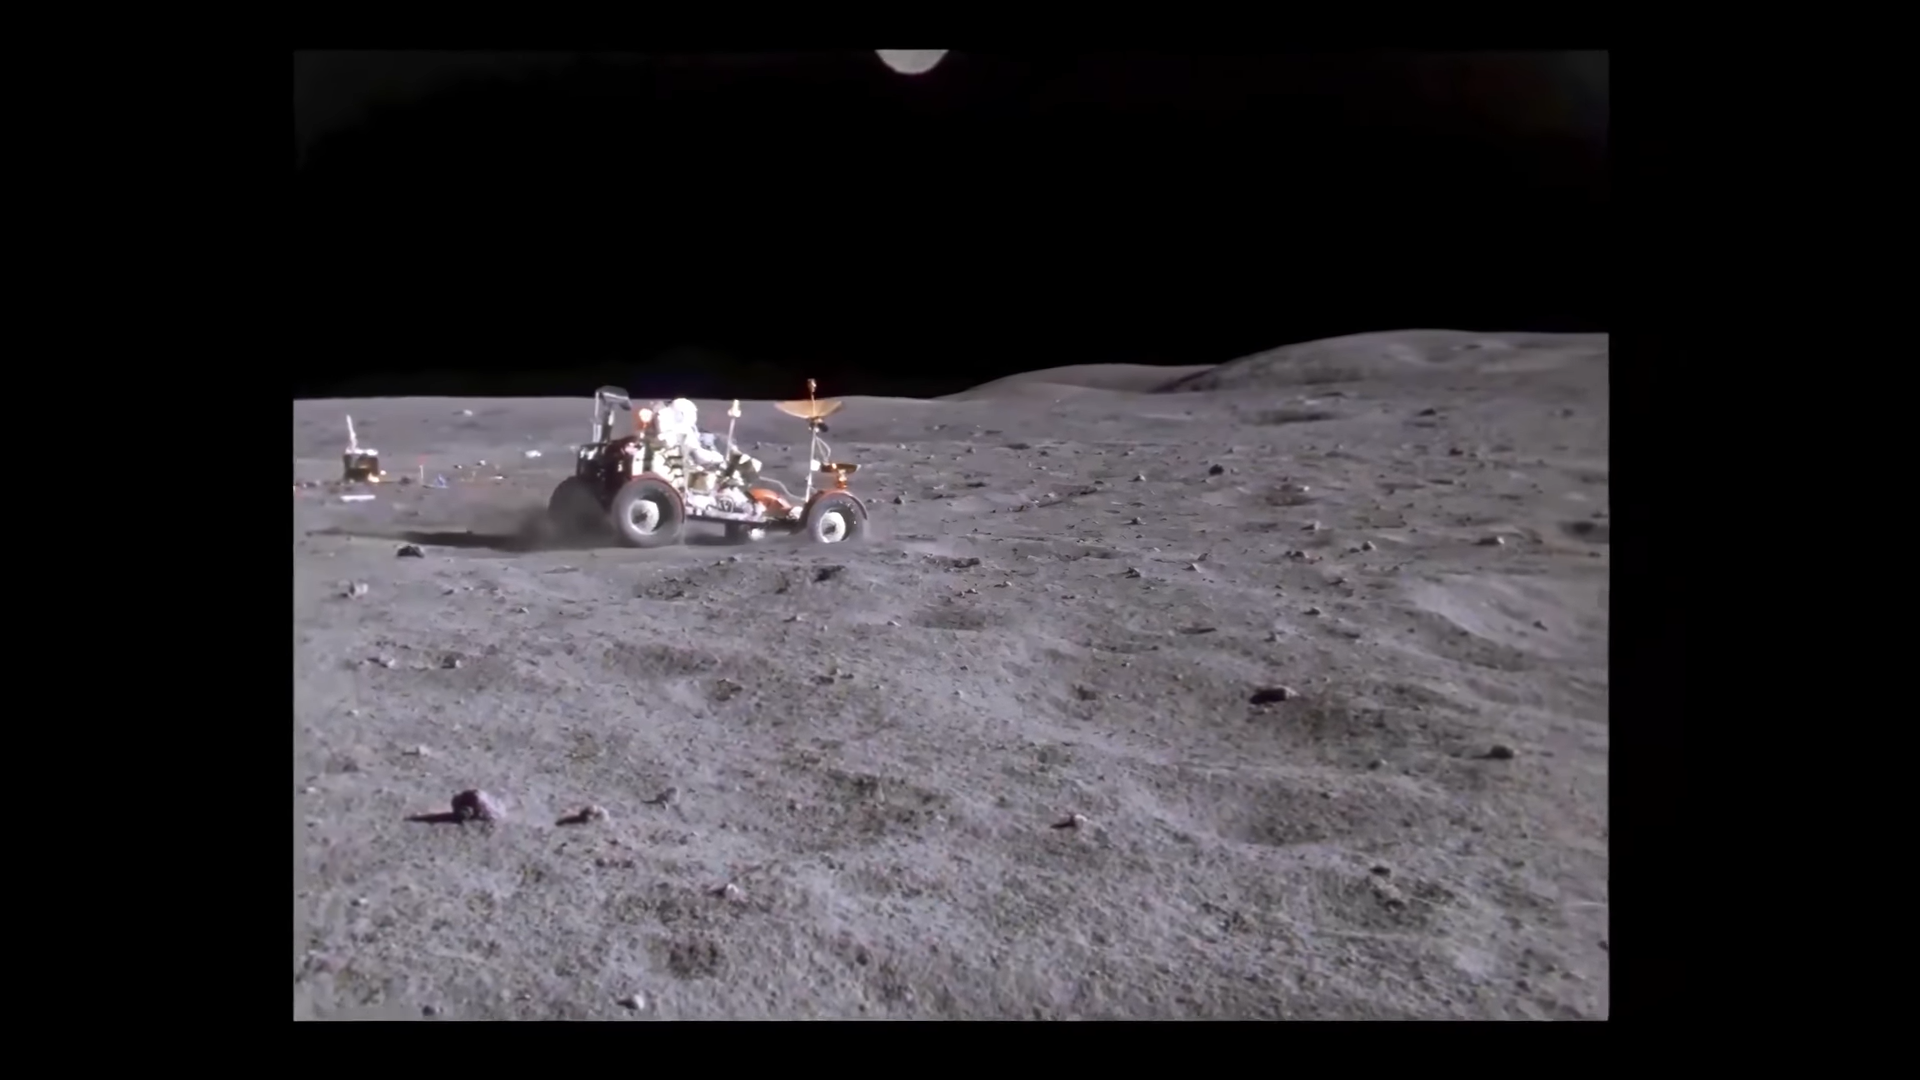 Đoạn phim “Lunar Rover Grand Prix” từ nhiệm vụ Apollo 16 vào năm 1972 đã được nâng cấp lên 4K60FPS